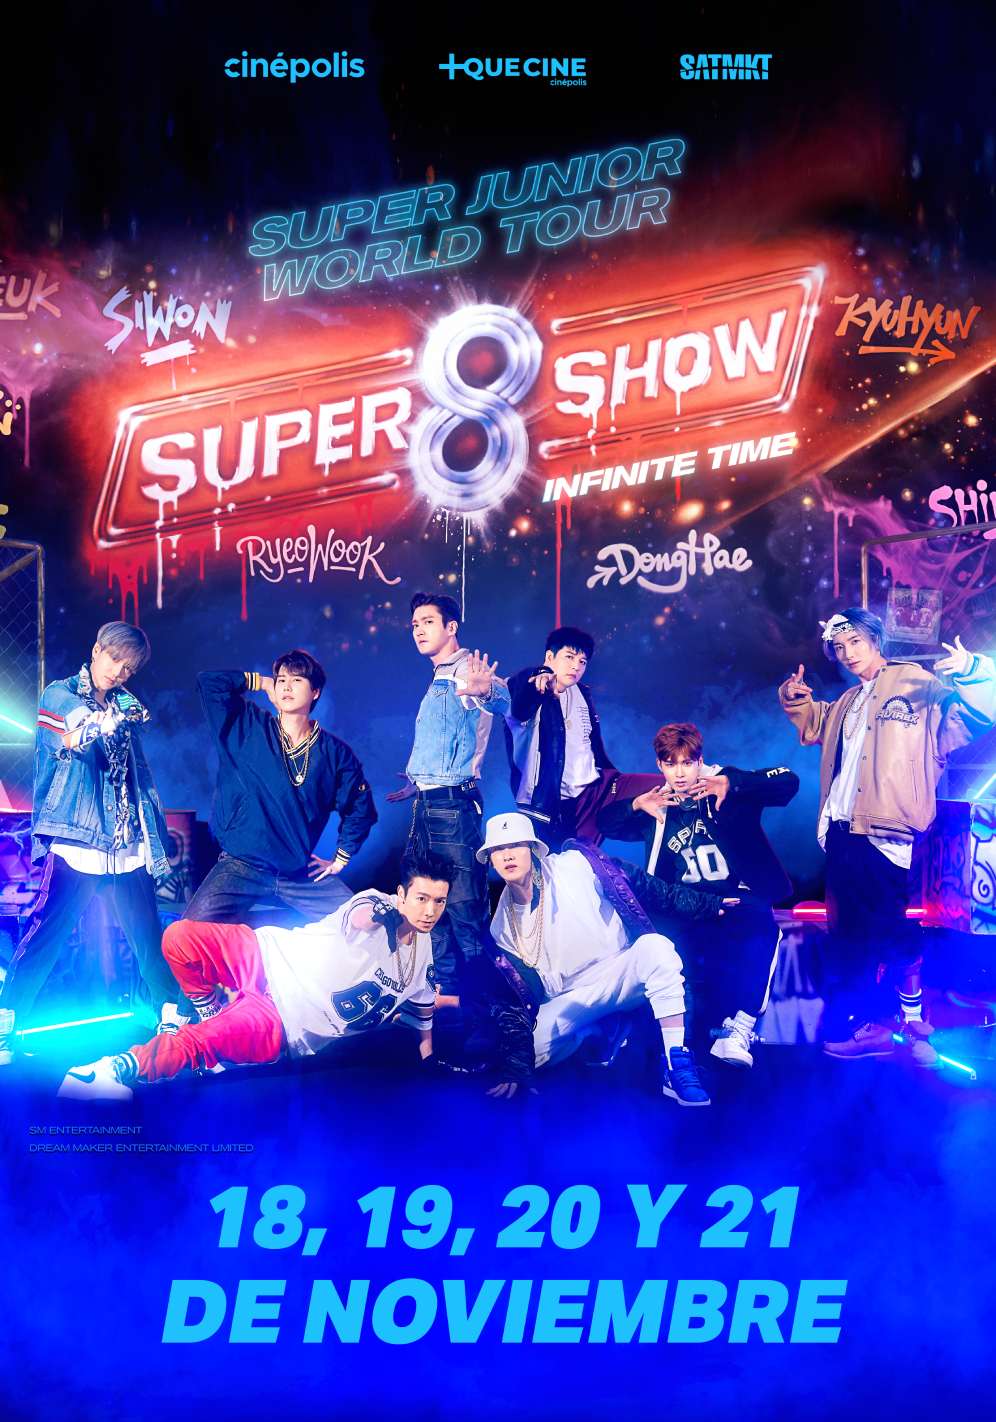 Super Junior World Tour [Super Show 8: Infinite Time] - SensaCine